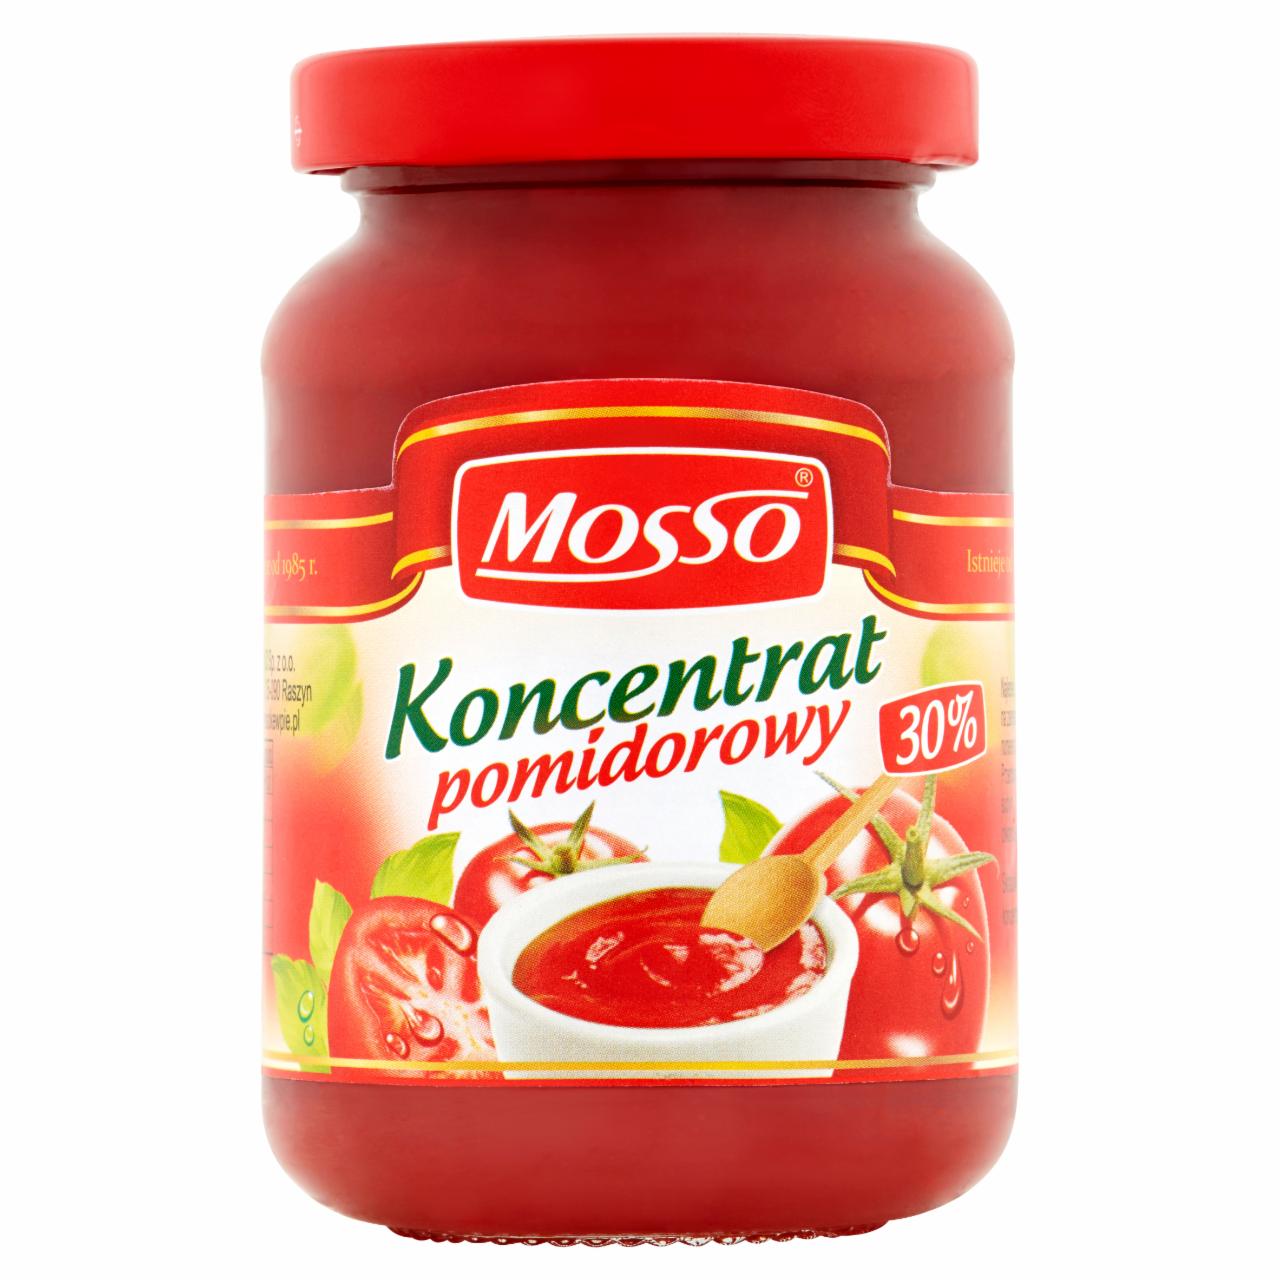 Zdjęcia - Mosso Koncentrat pomidorowy 30% 200 g